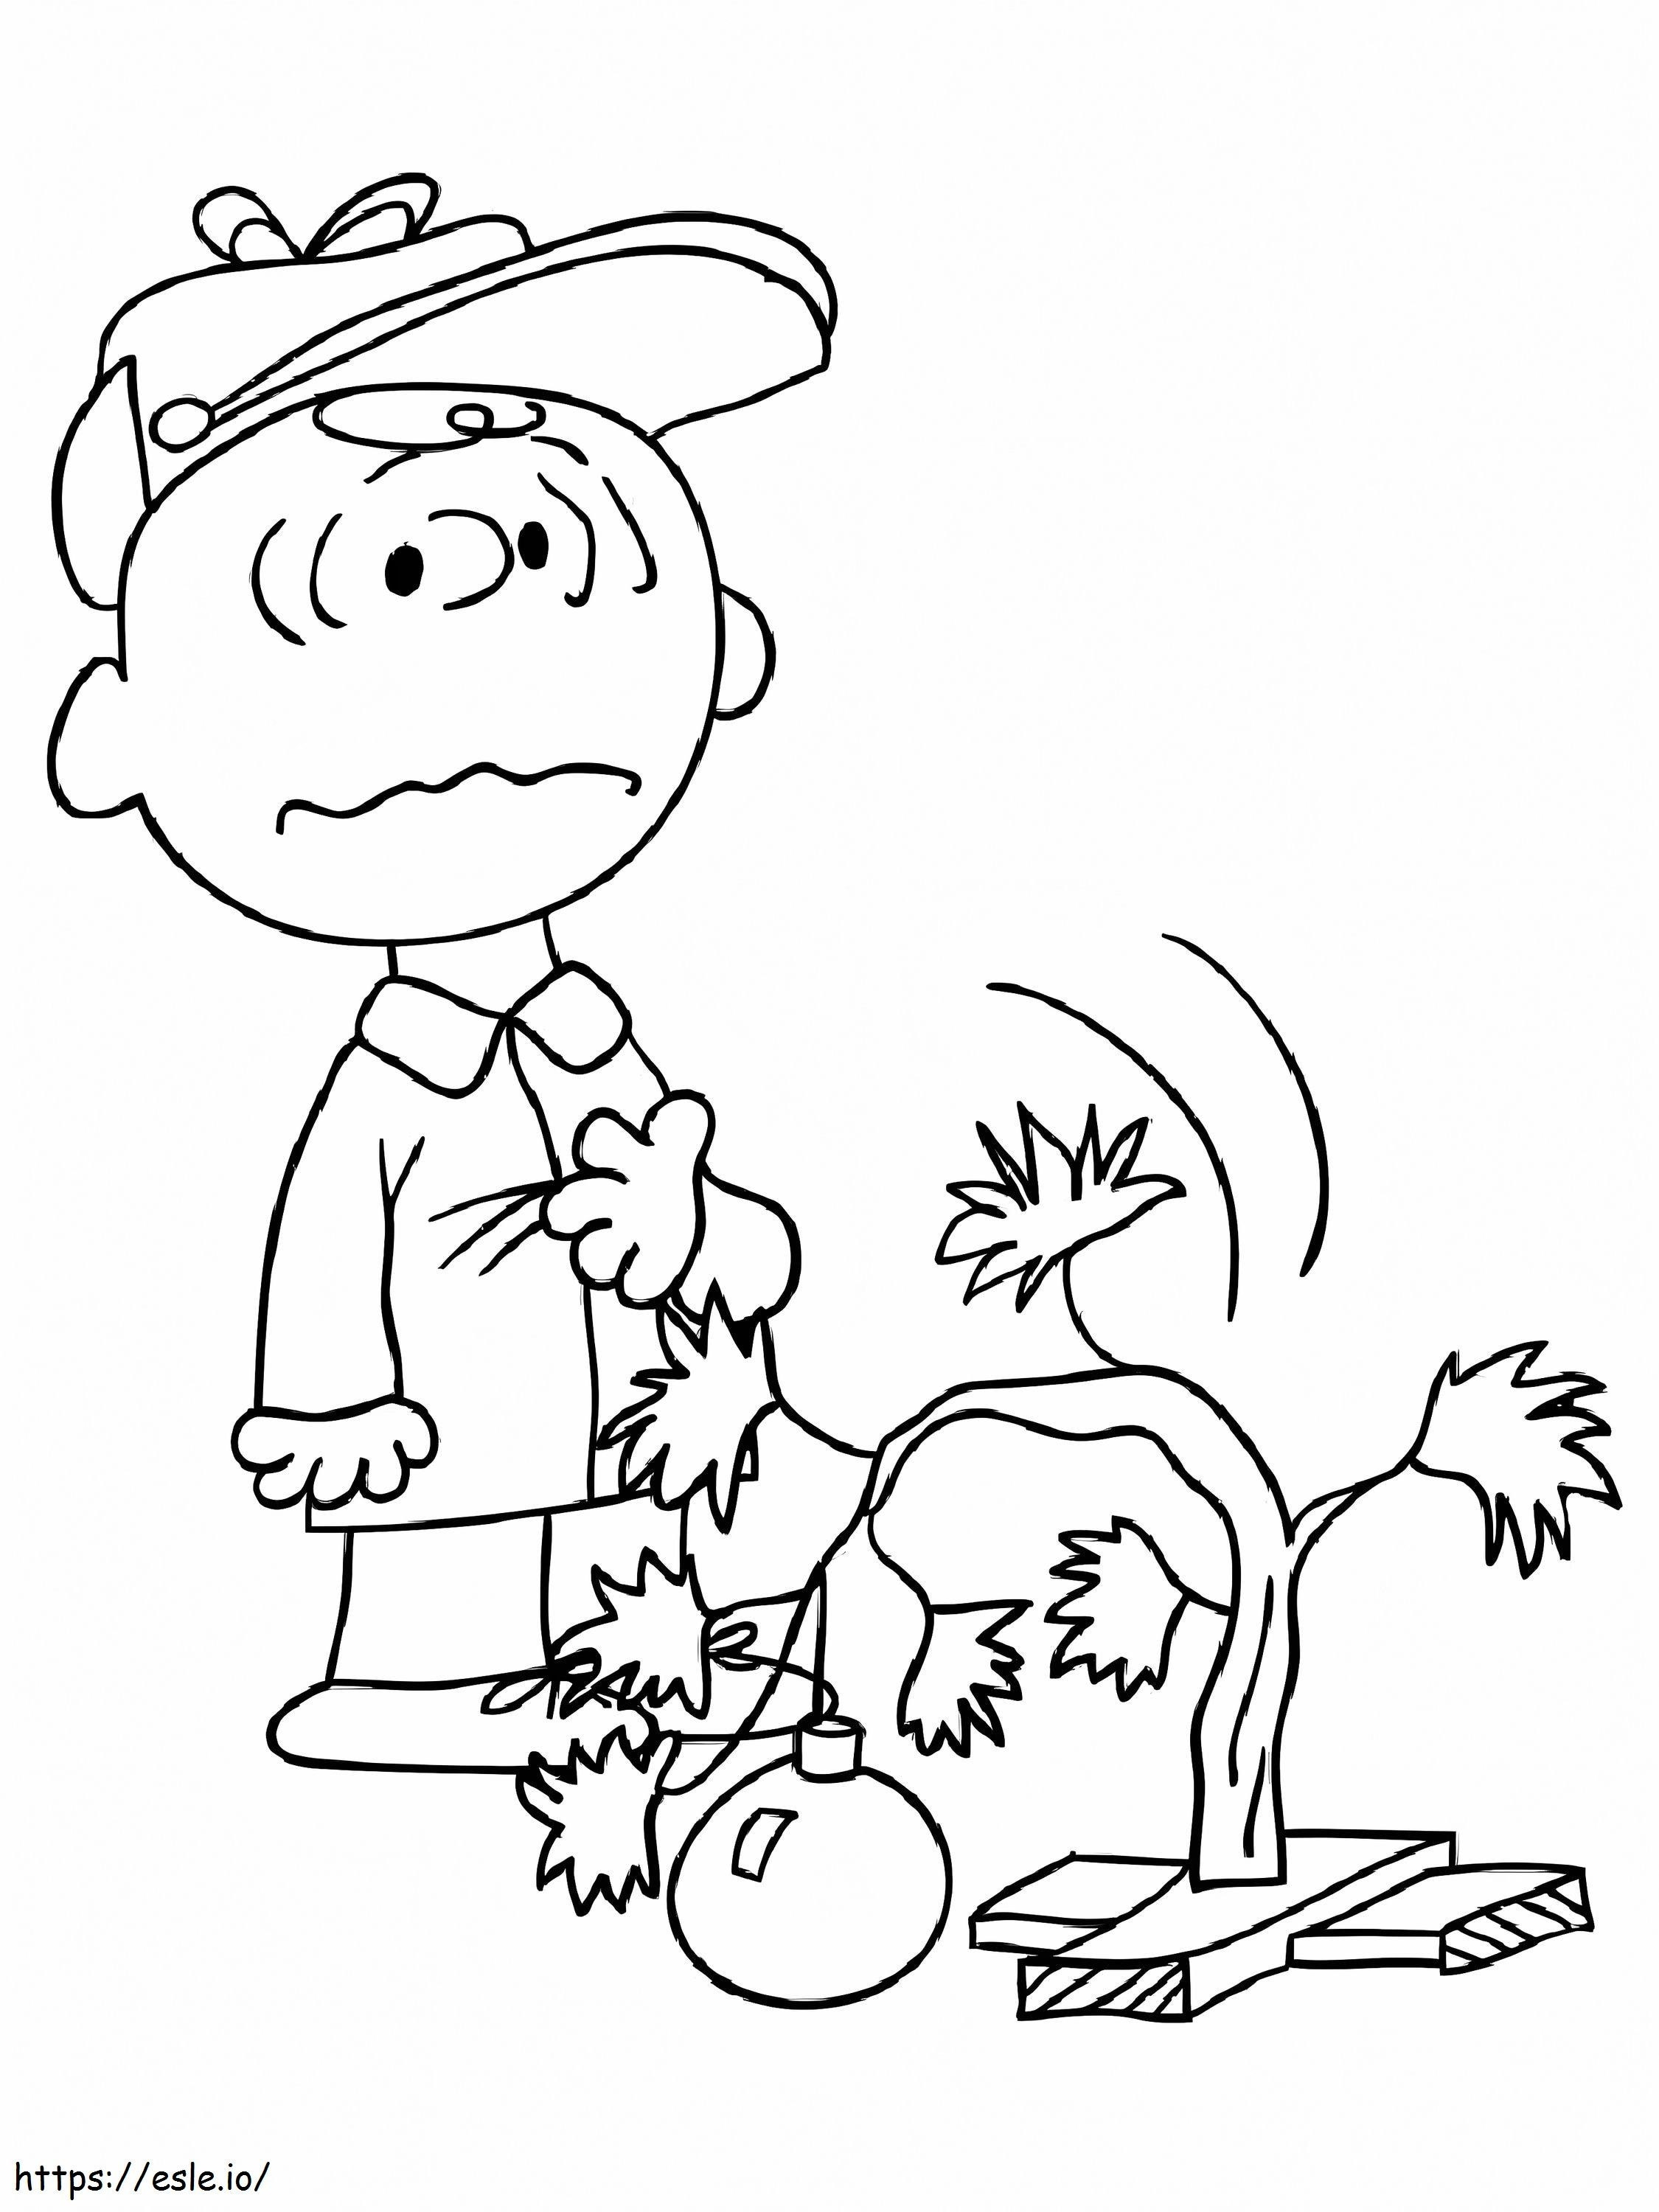 Trist Charlie Brown de colorat